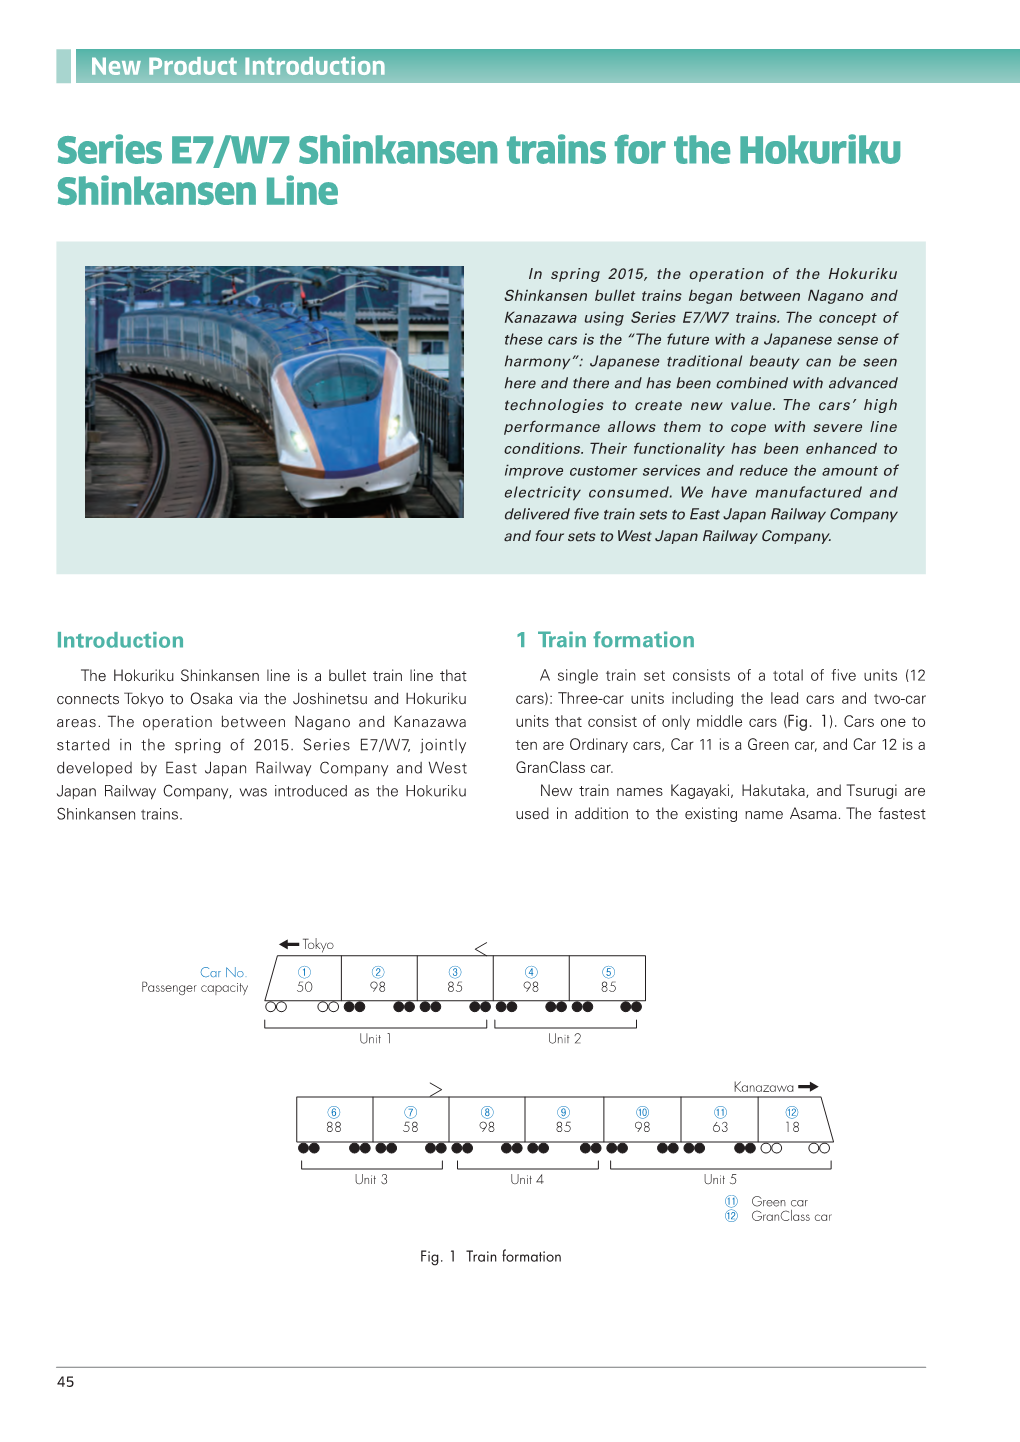 Series E7/W7 Shinkansen Trains for the Hokuriku Shinkansen Line